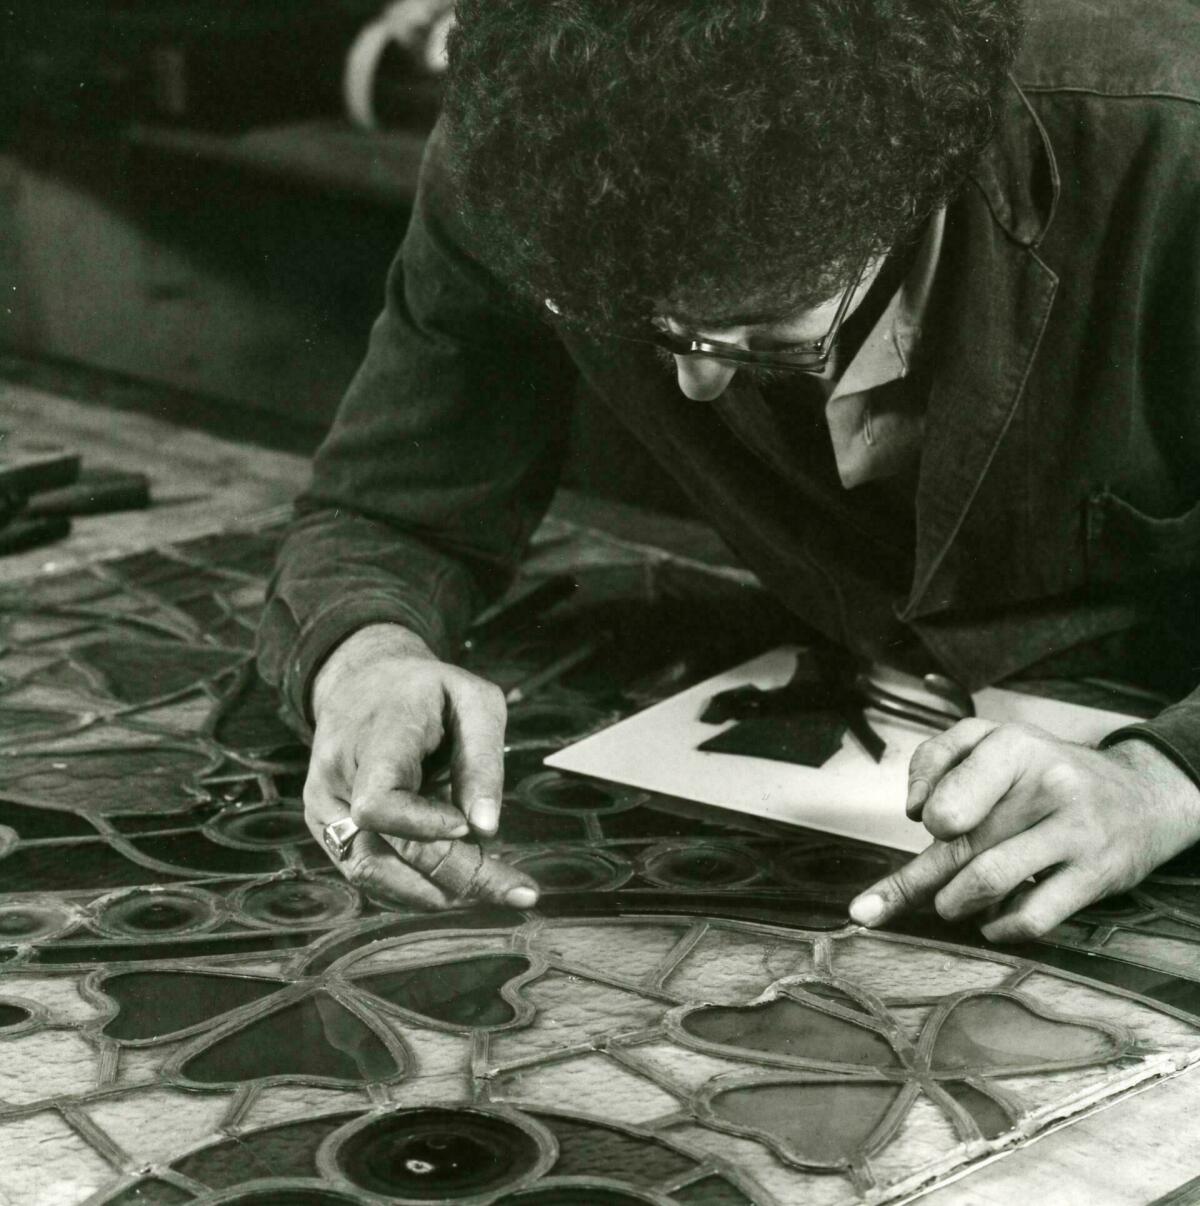 Foto en blanc i negre. Es veu un artesà vitraller assegut posant peces de vidre en un vitrall situat damunt una taula